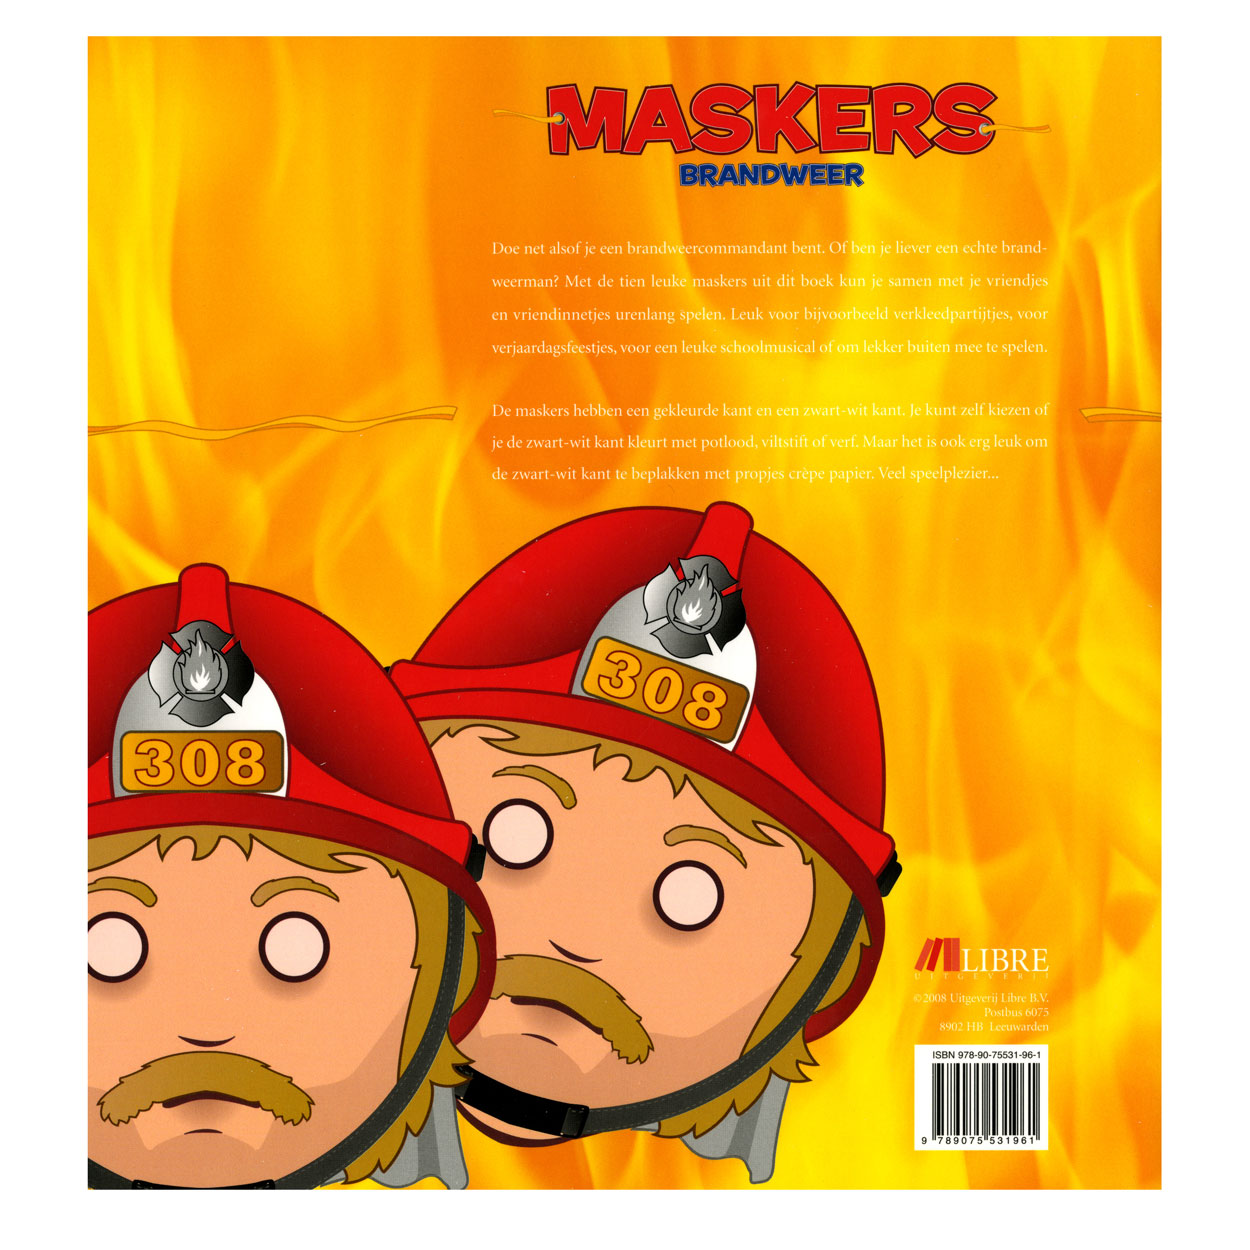 Maskers: Brandweer